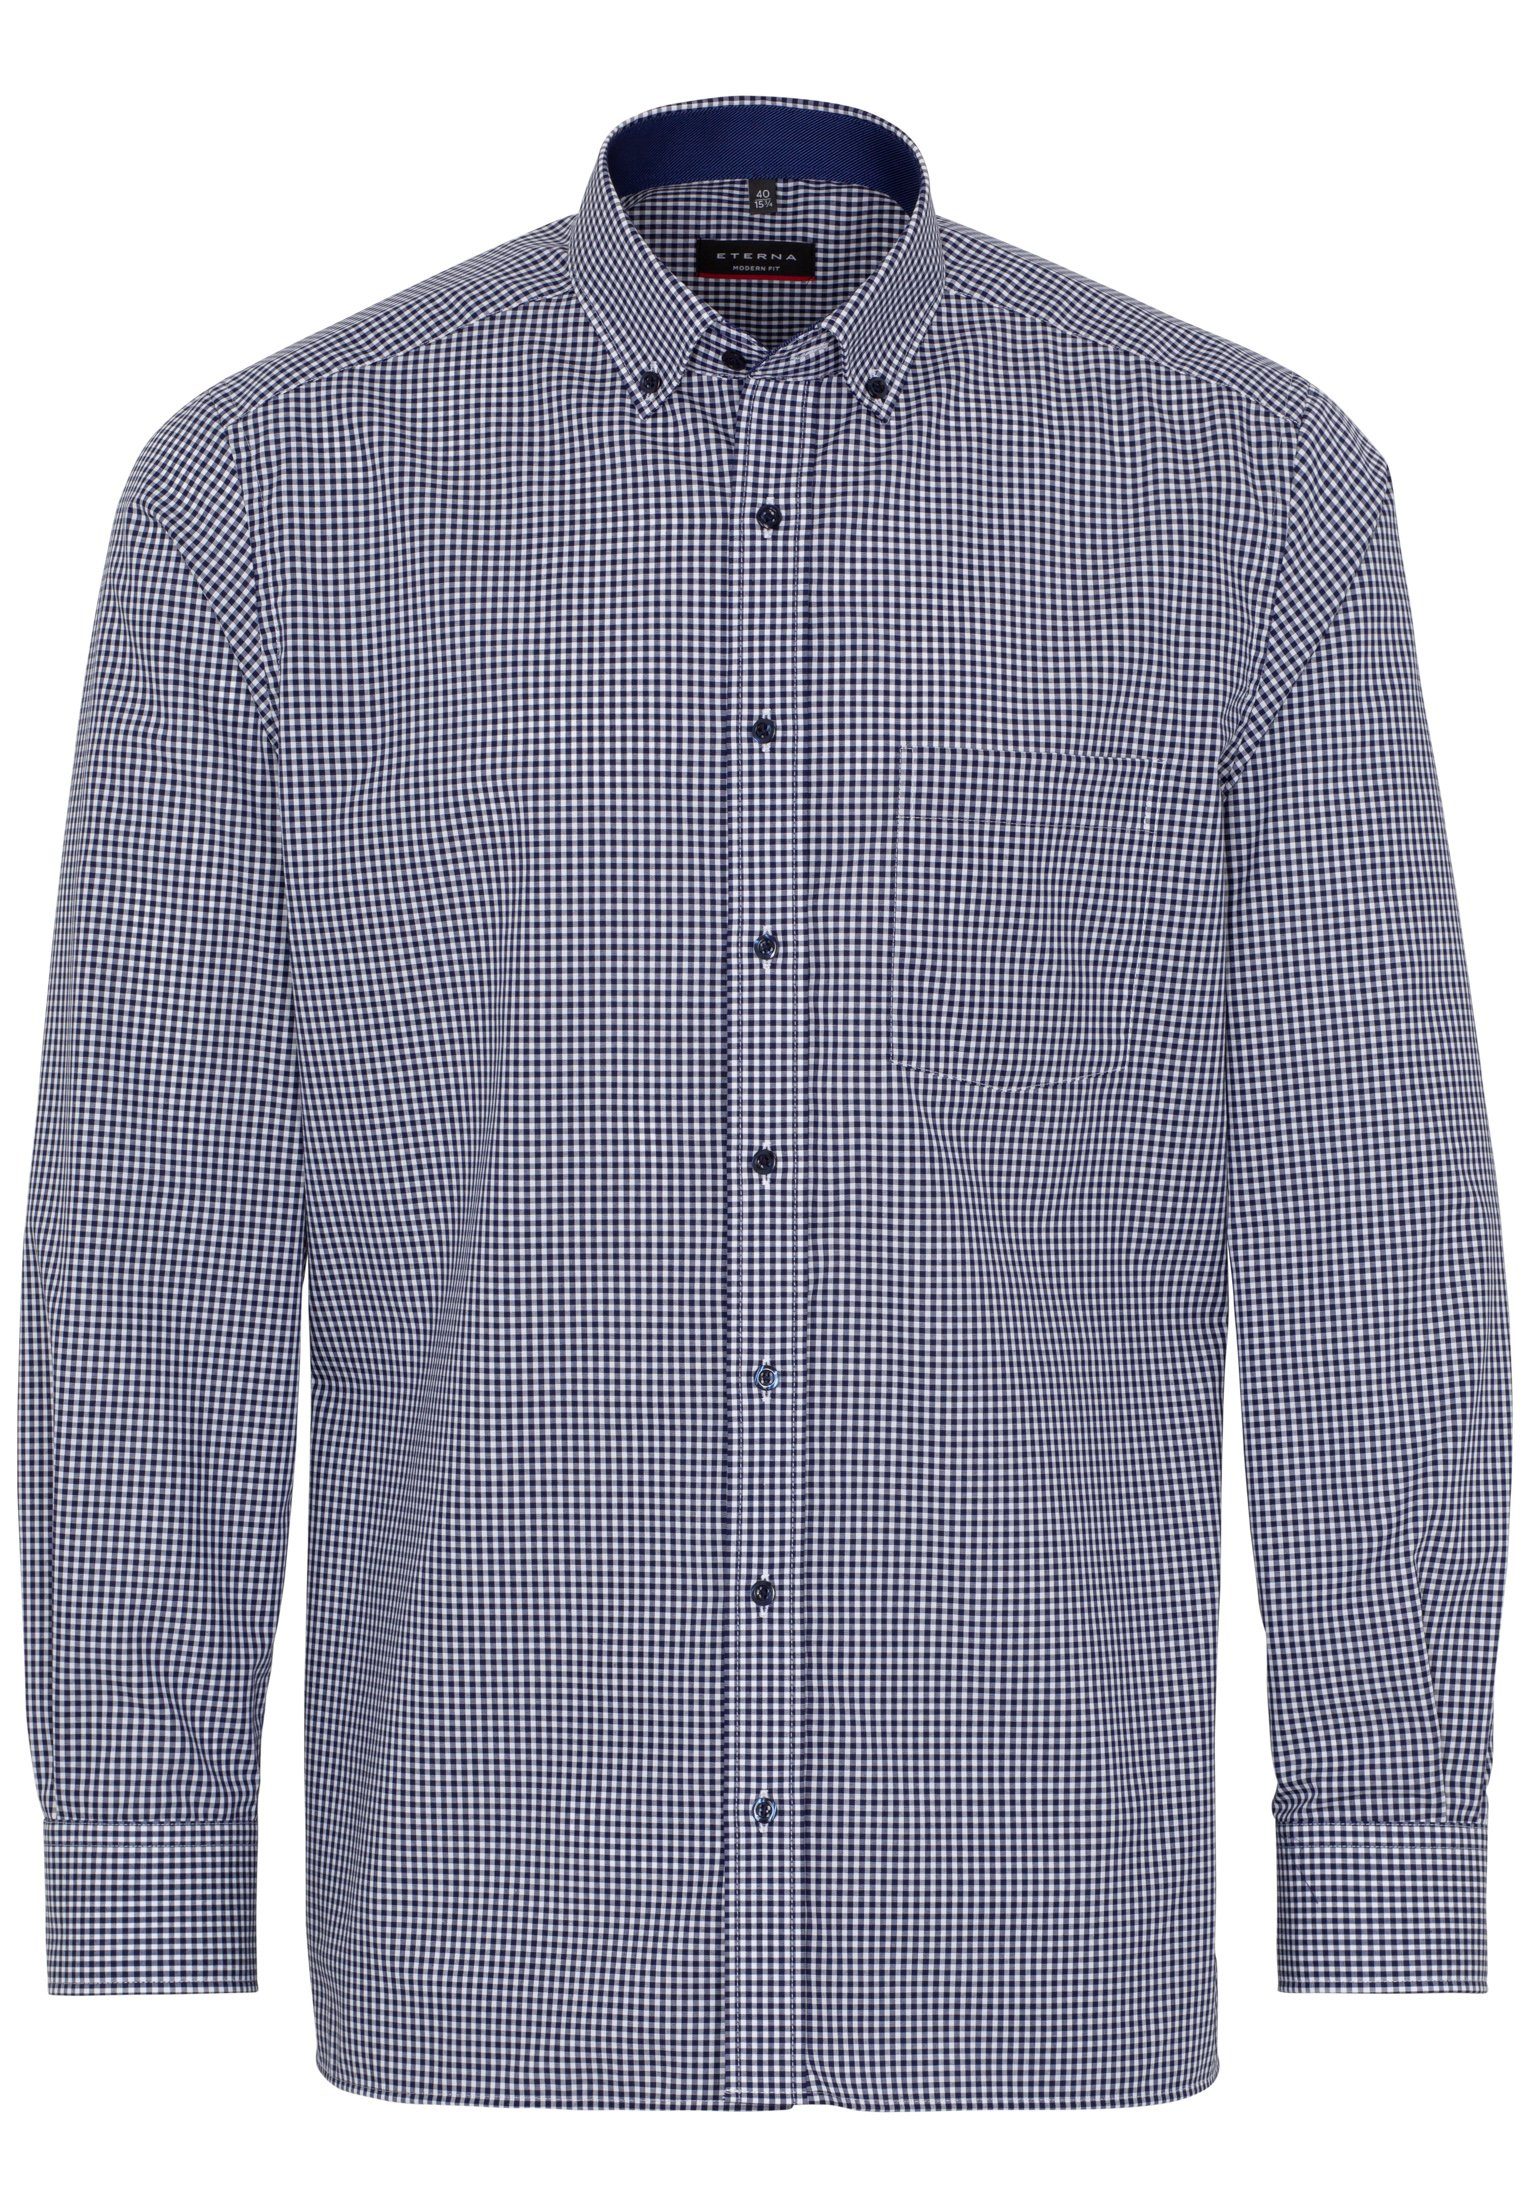 Eterna Langarmhemd Hemd Modern Fit mit Tasche kariert blau-weiß